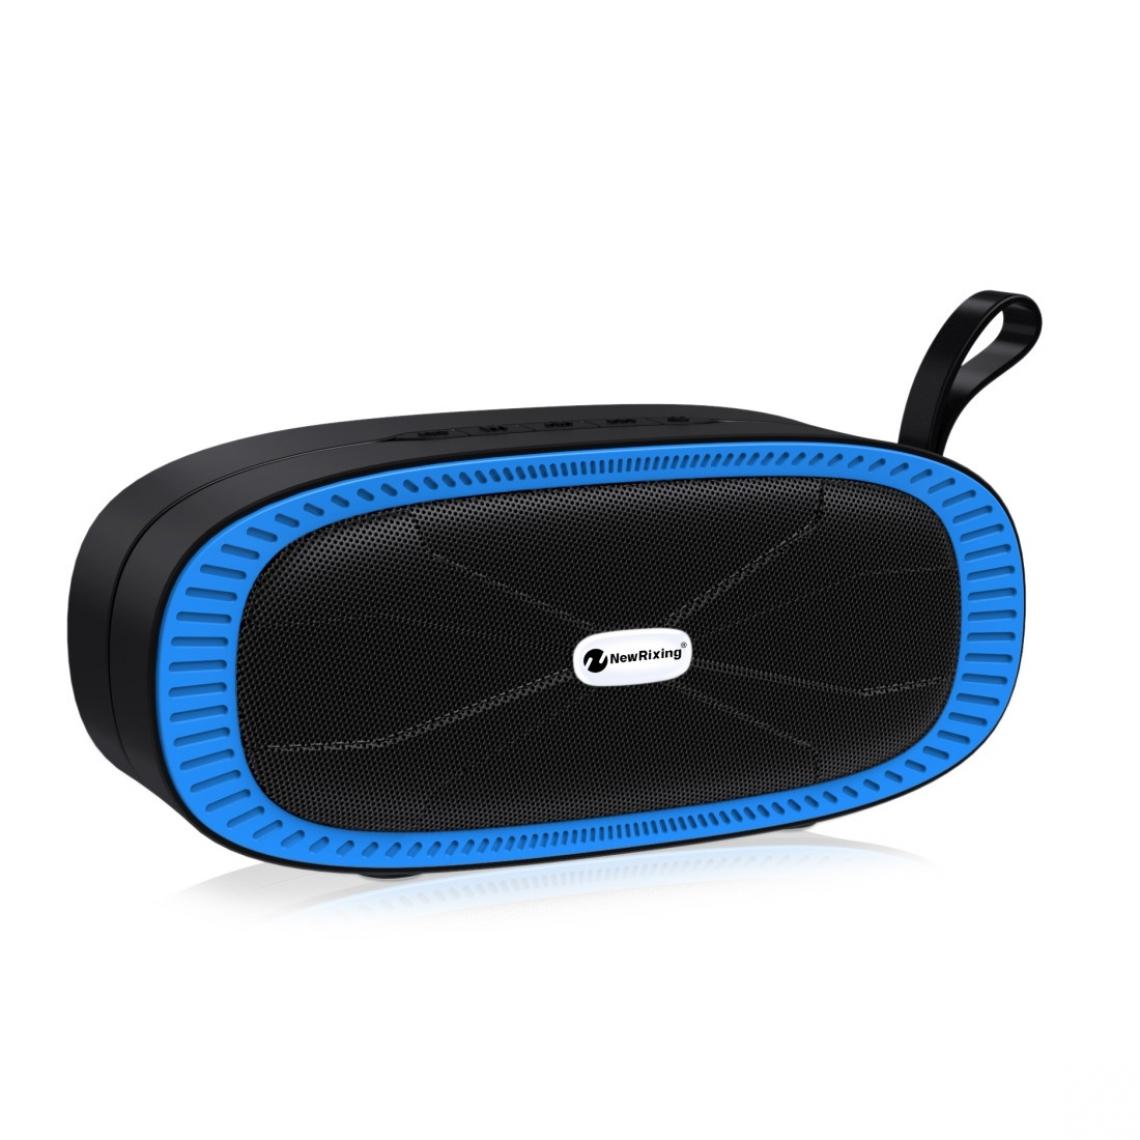 Wewoo - Enceinte Bluetooth NR4022 Haut-parleur stéréo portable avec barre de son surround microphonecarte Micro SD de soutien FM bleu - Enceintes Hifi